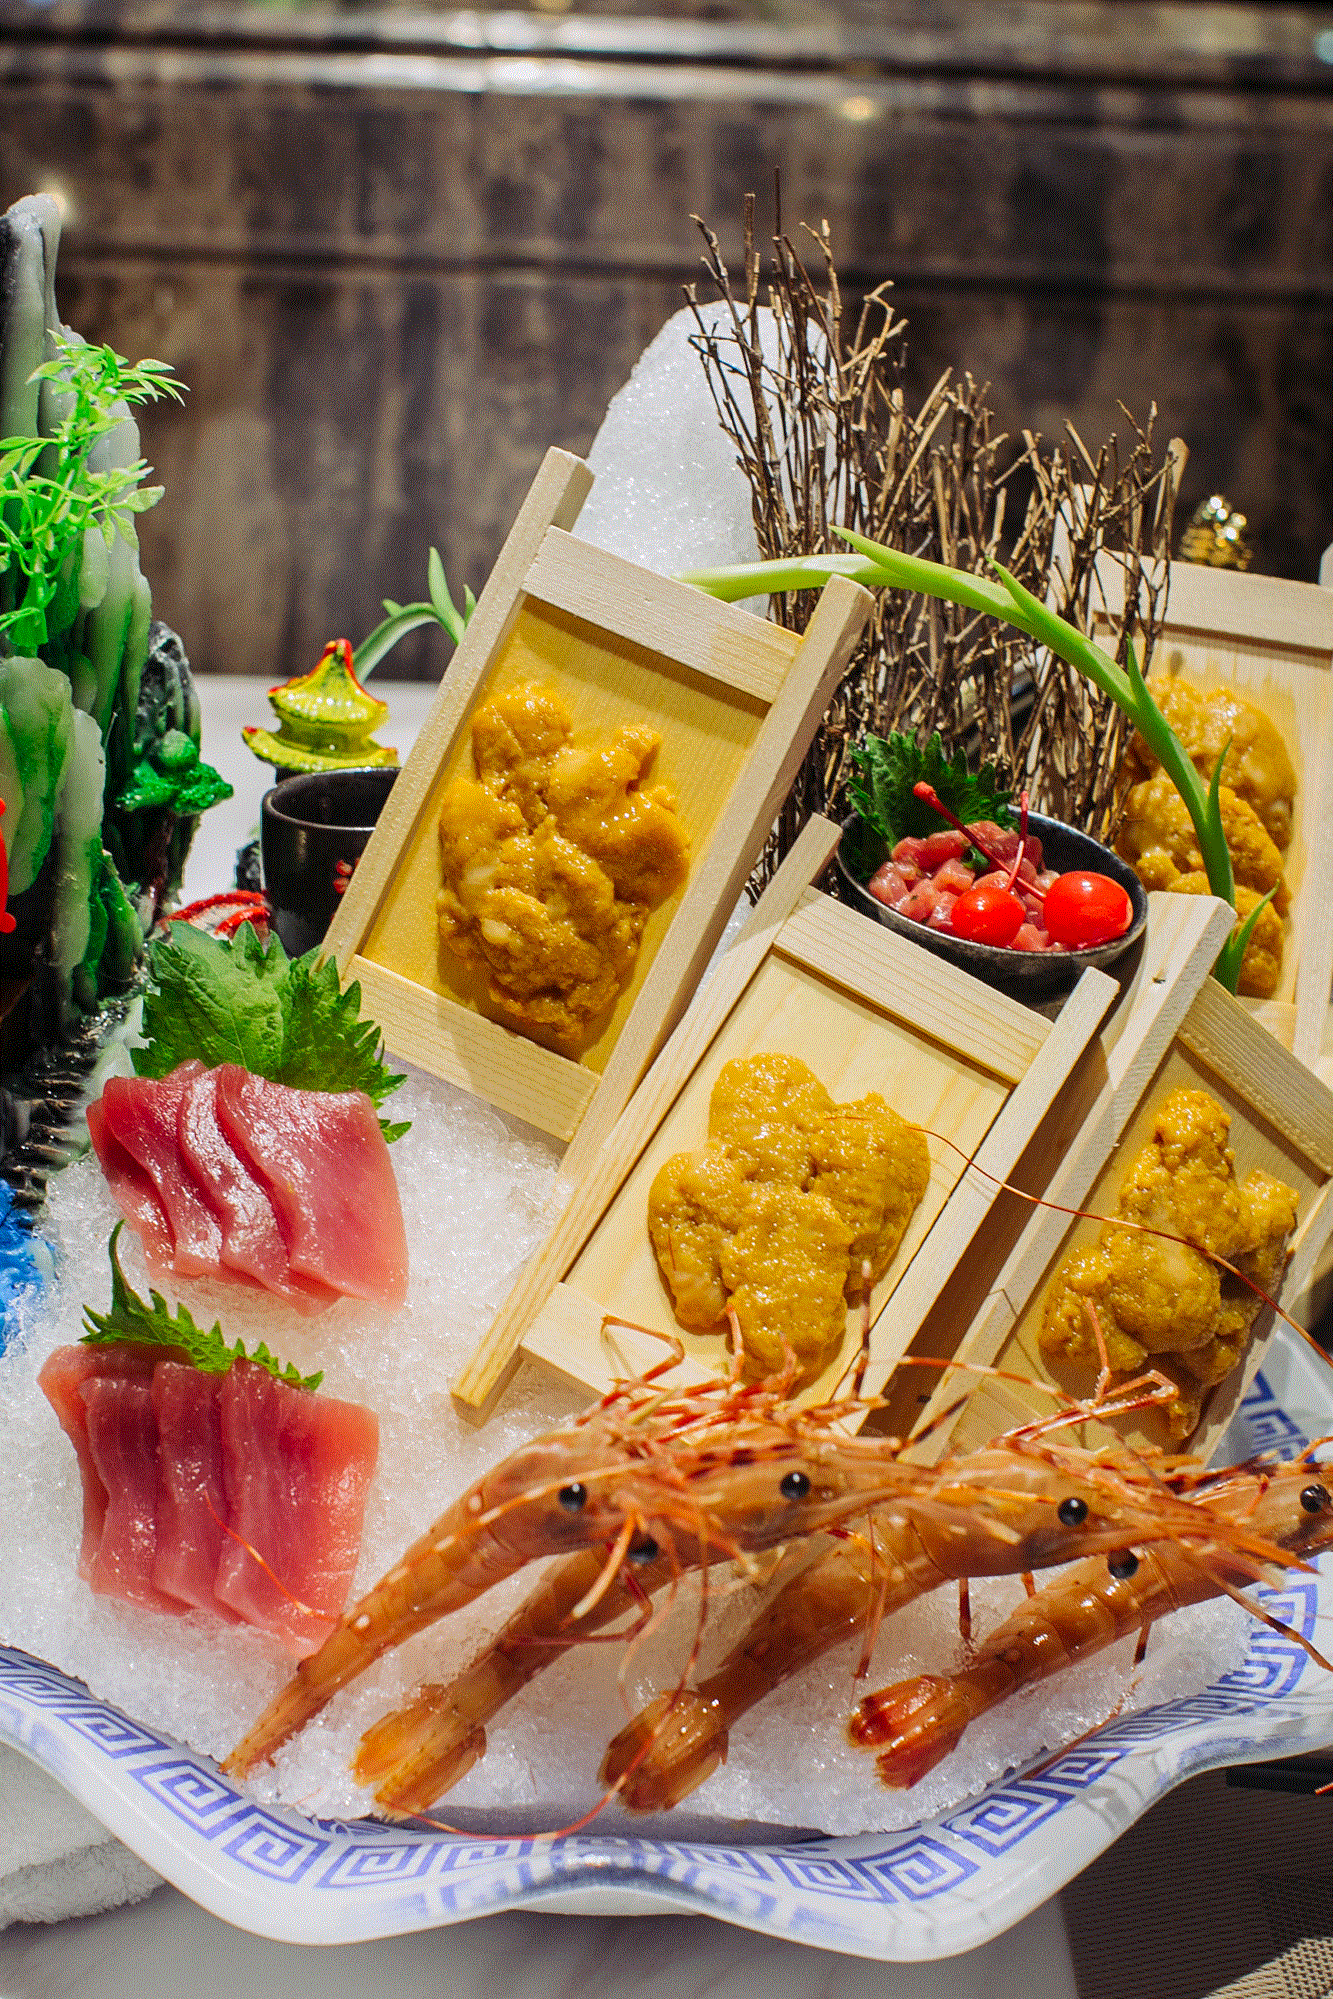 来「观宴」一顿吃遍来自世界四大渔场、149个国家的500种特色美味!